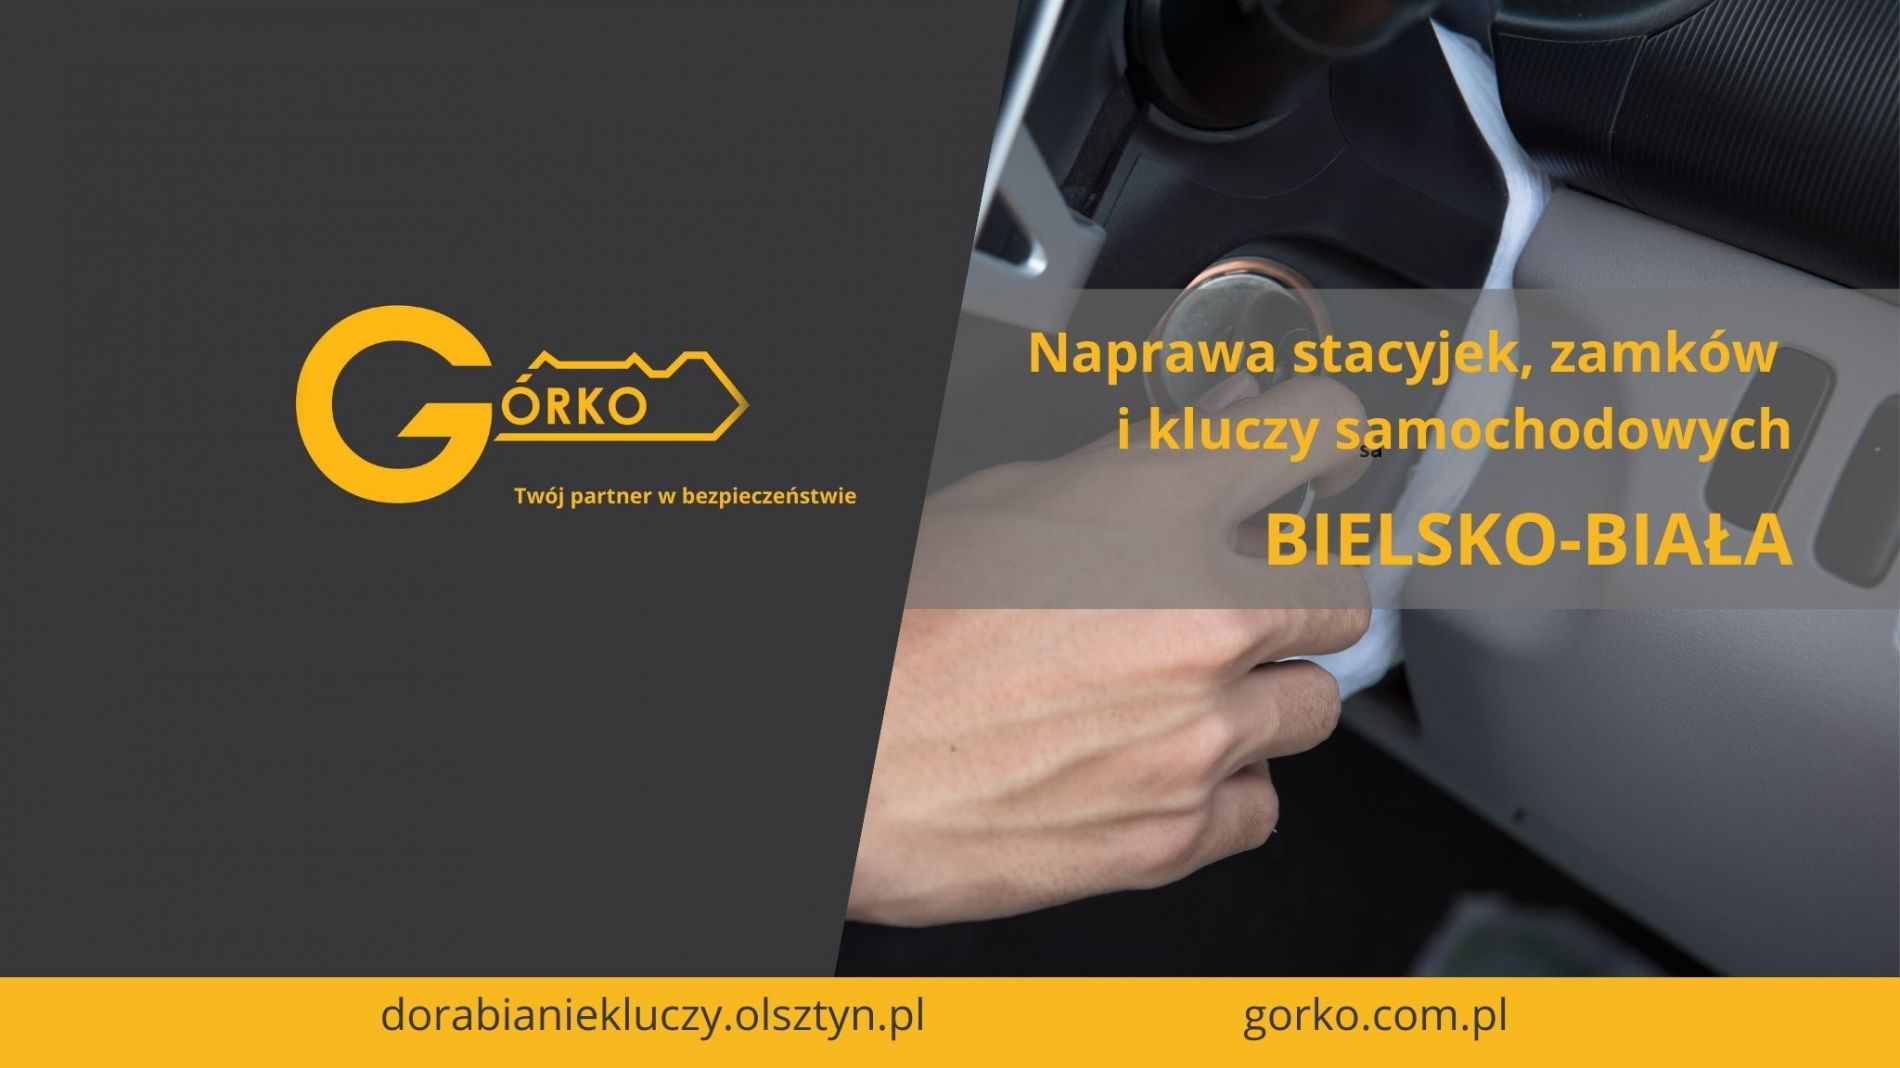 Naprawa stacyjek, zamków i kluczy samochodowych – Bielsko-Biała (Usługa zdalna)